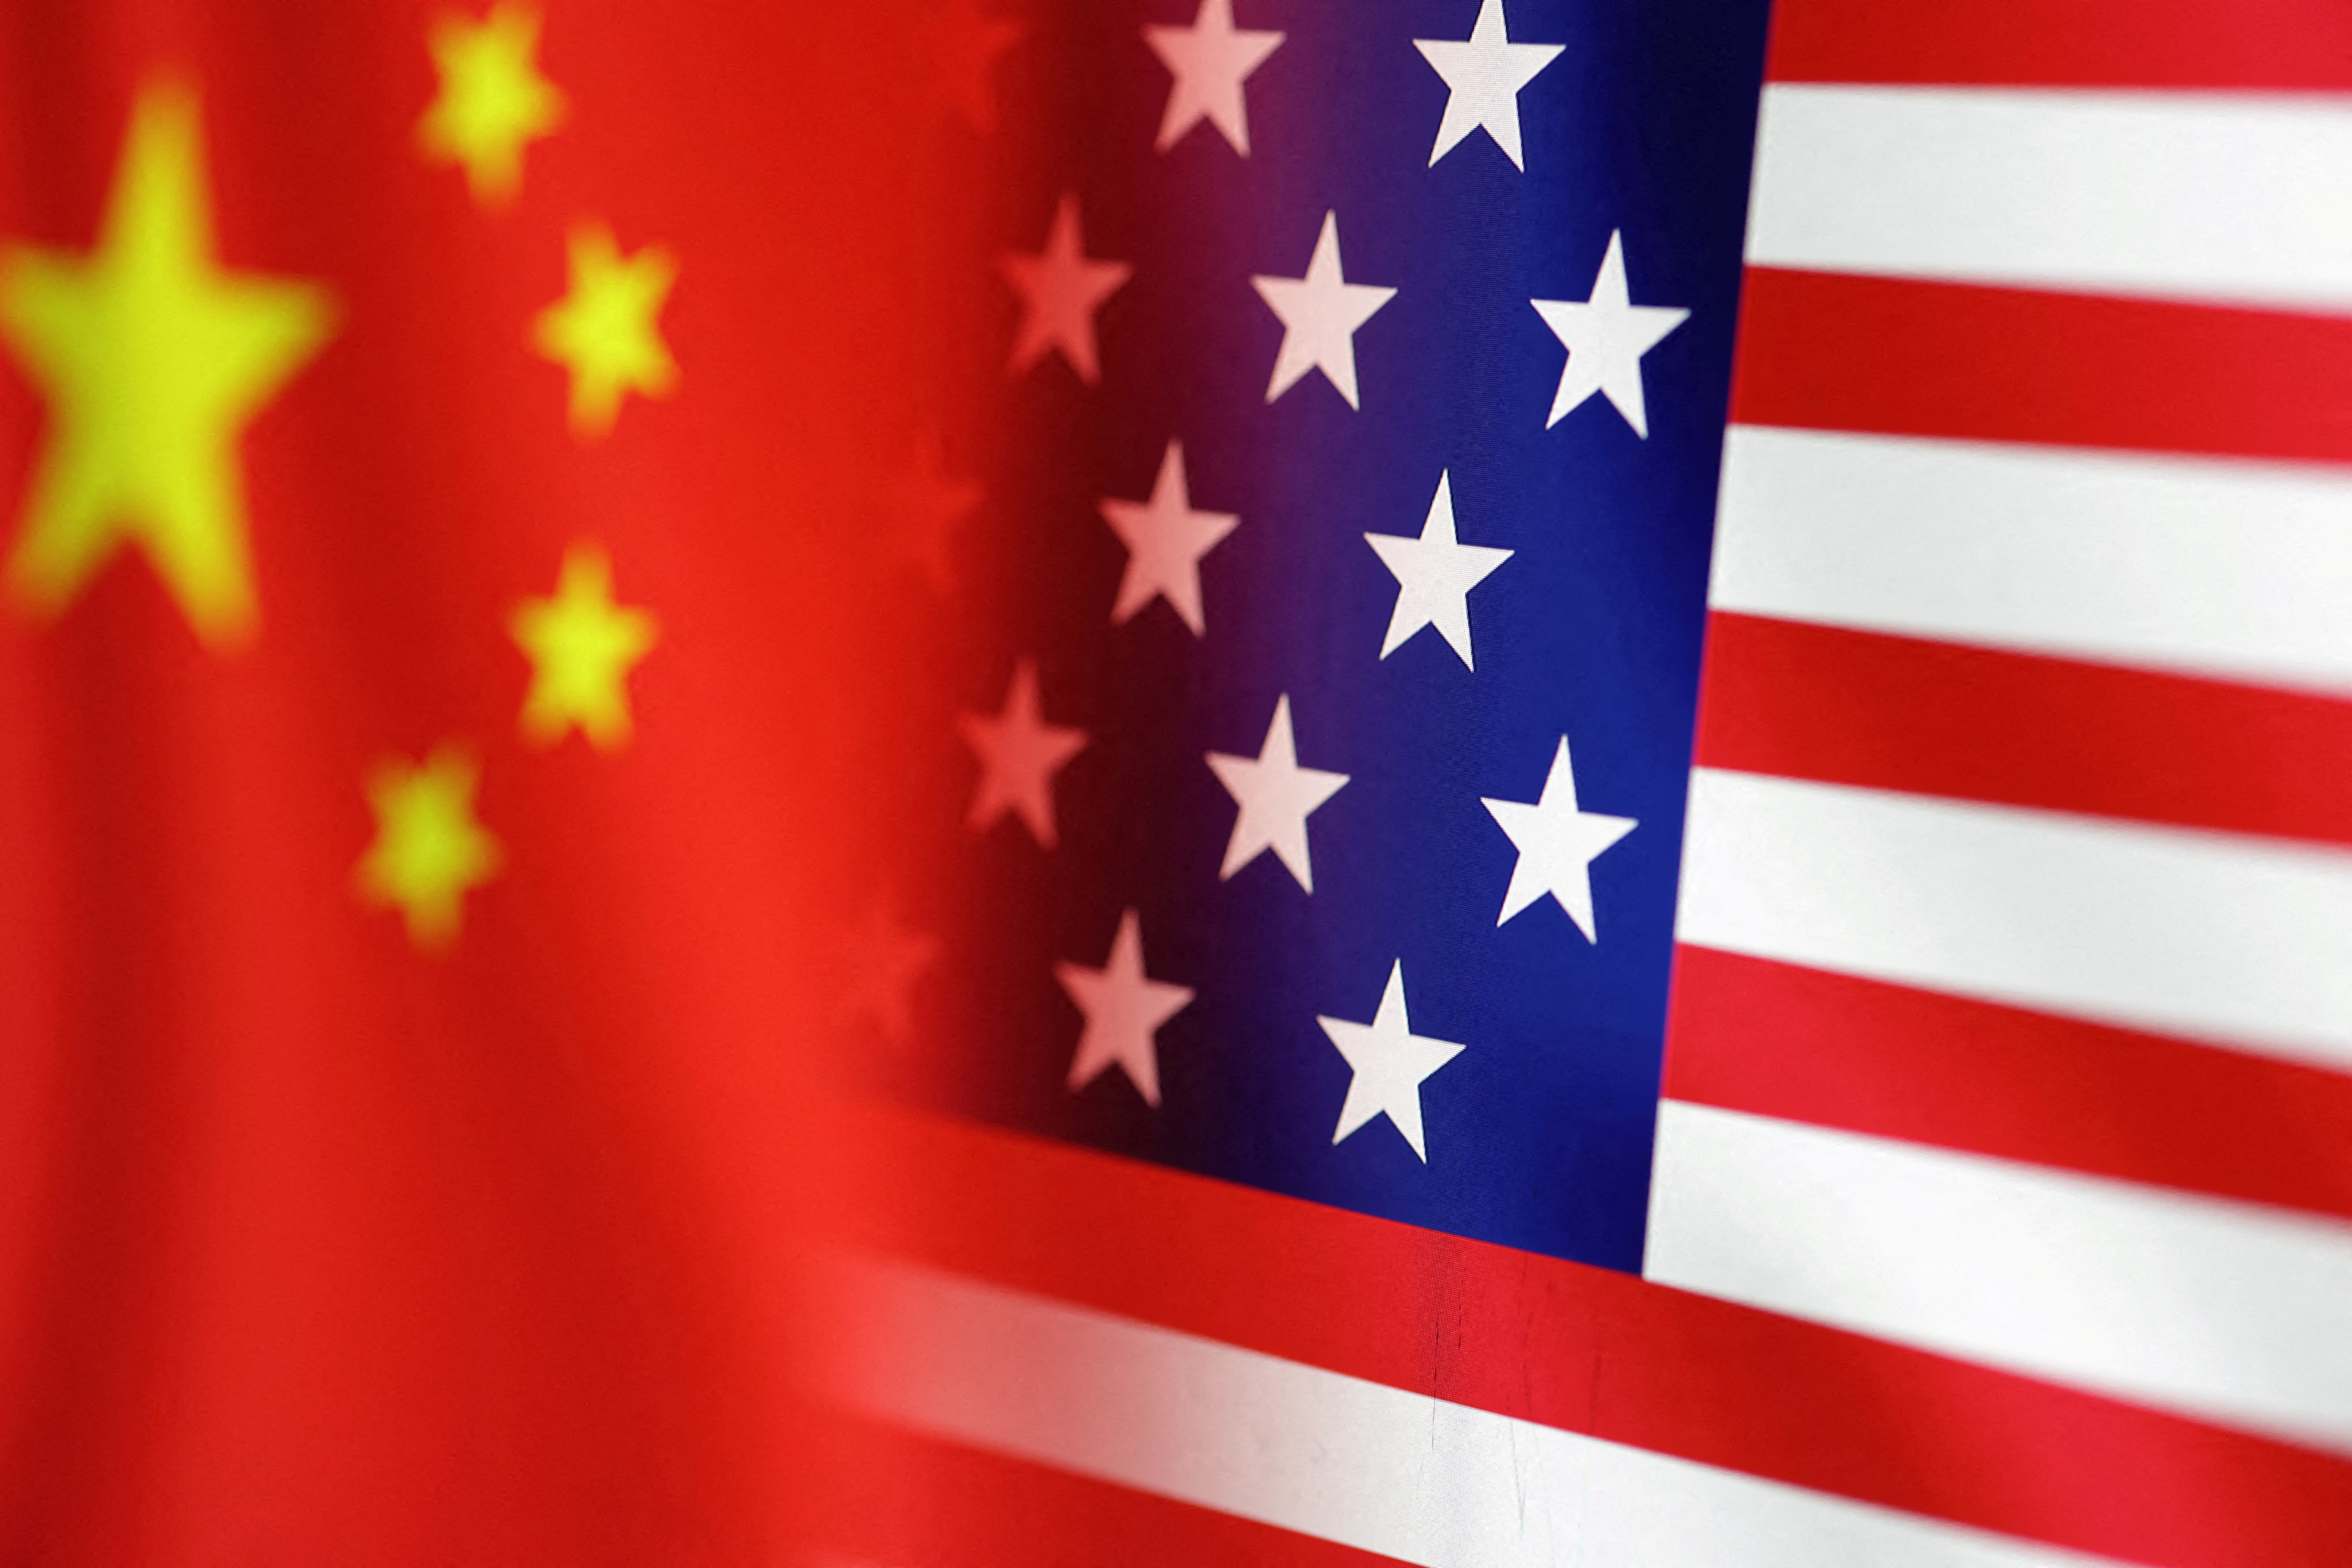 Hình minh họa cho thấy cờ Mỹ và Trung Quốc